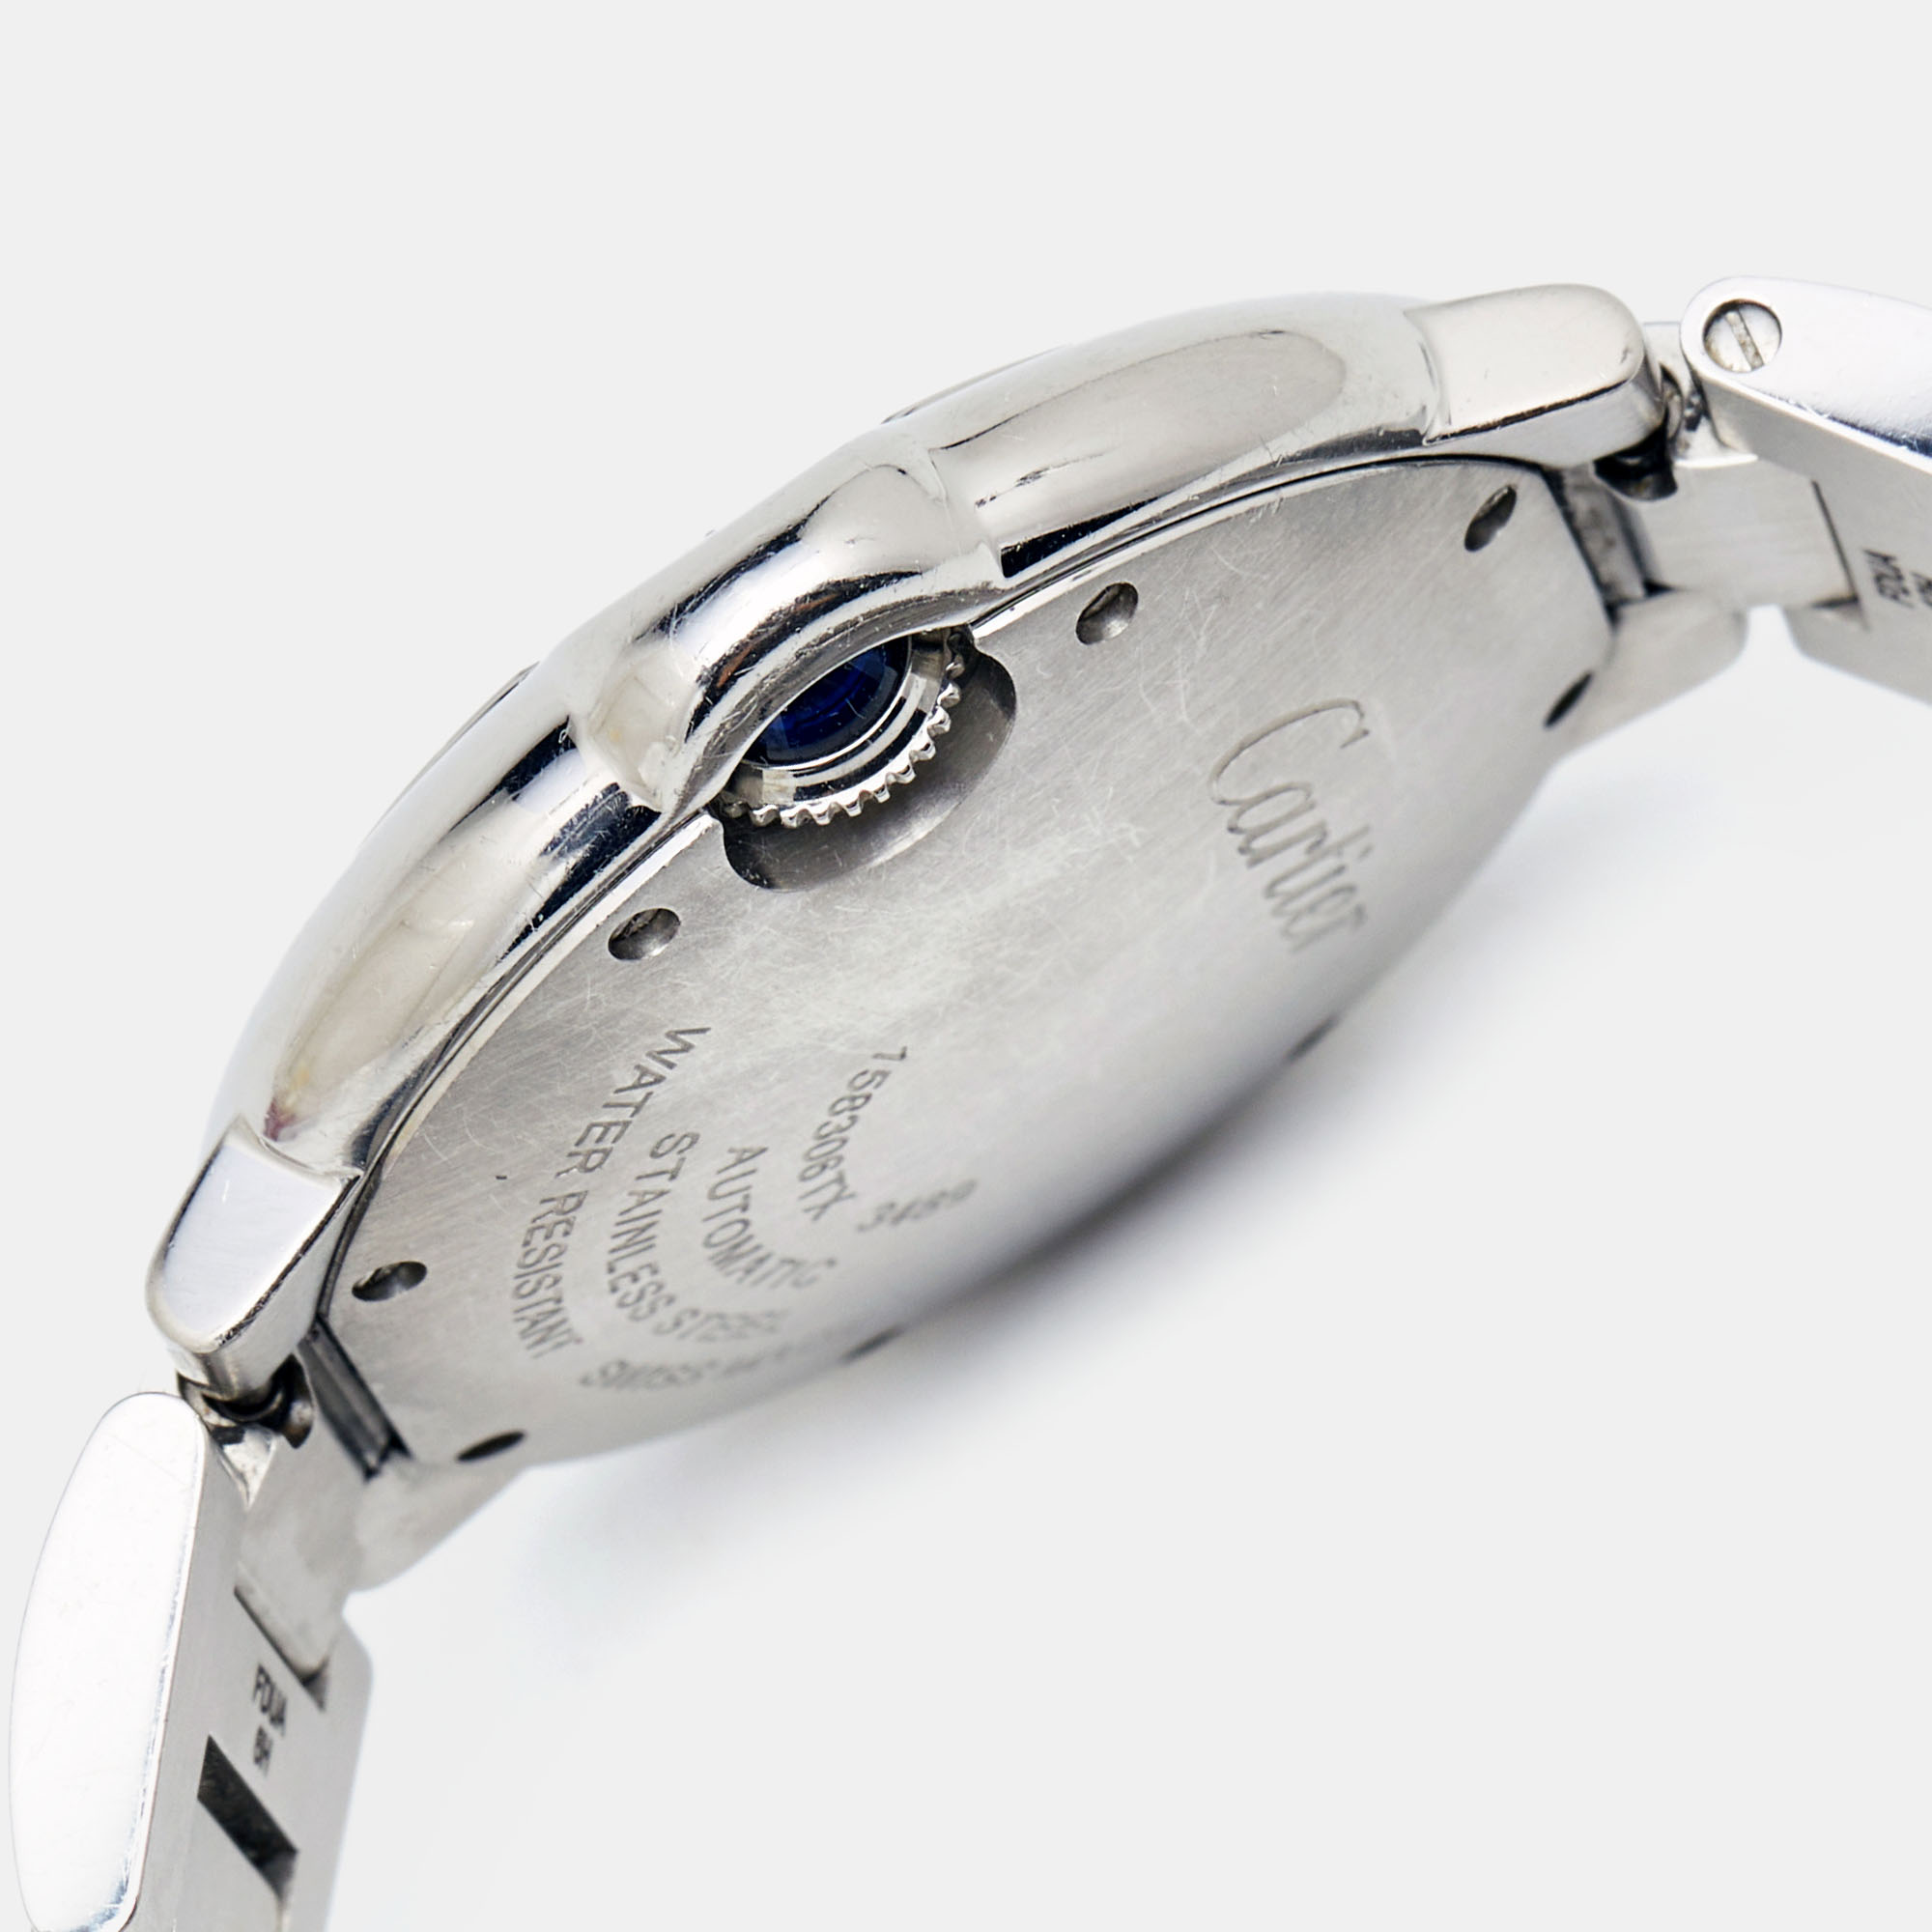 Cartier Silver Stainless Steel Ballon Bleu W6920071 Women's Wristwatch 33 Mm